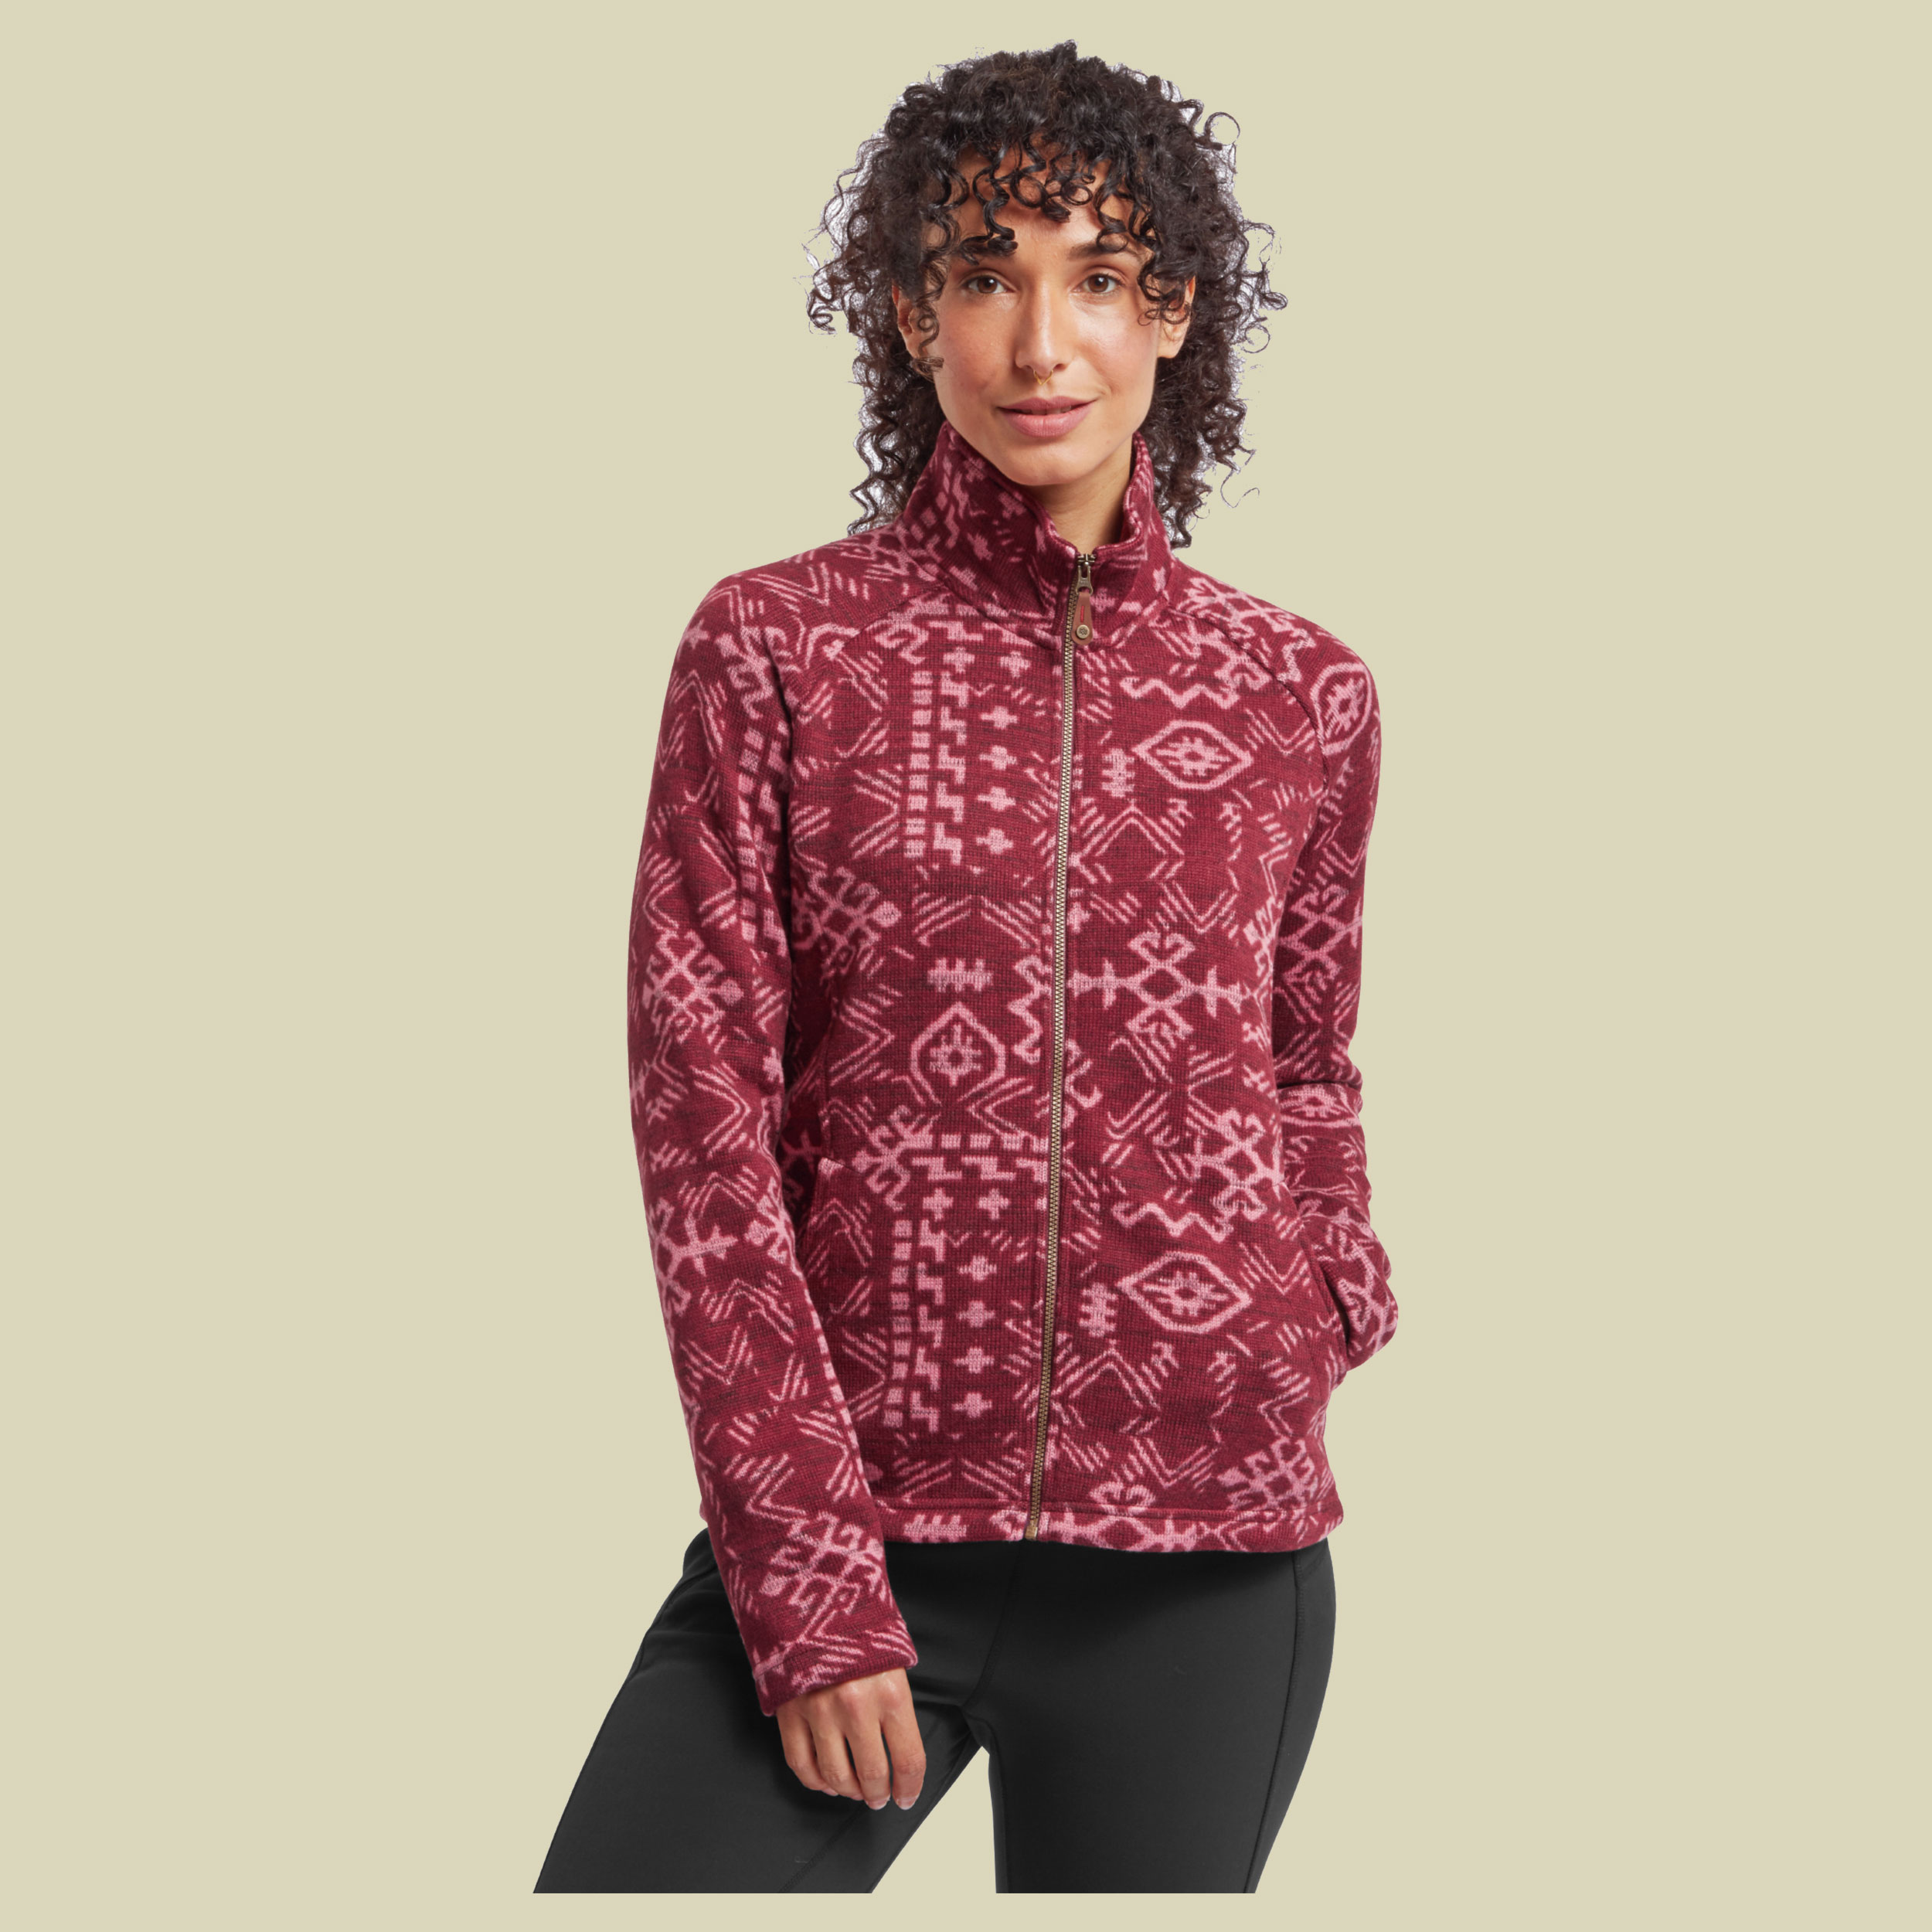 Bhutan Full Zip Jacket Women Größe XL Farbe beet red abstract